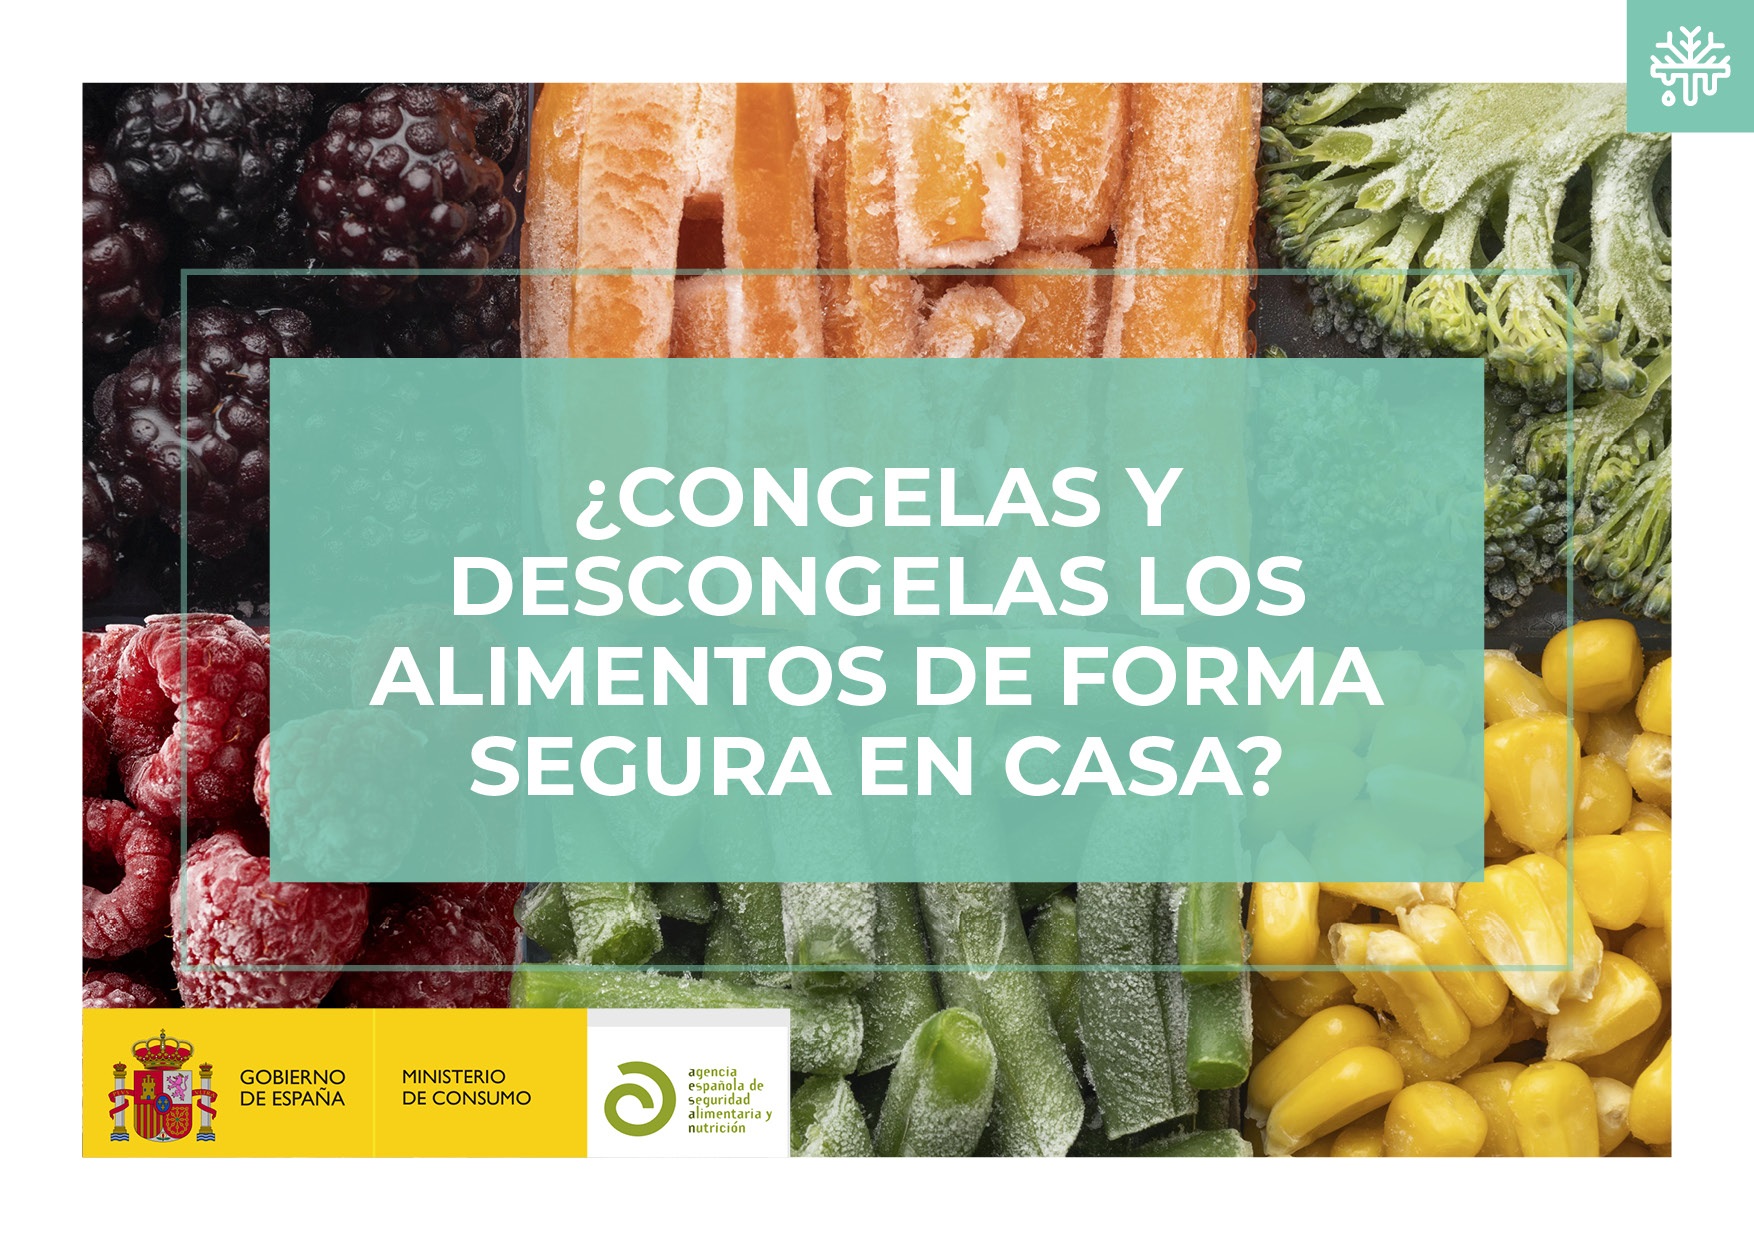 Enriquecer Nos vemos Susurro Aesan - Agencia Española de Seguridad Alimentaria y Nutrición